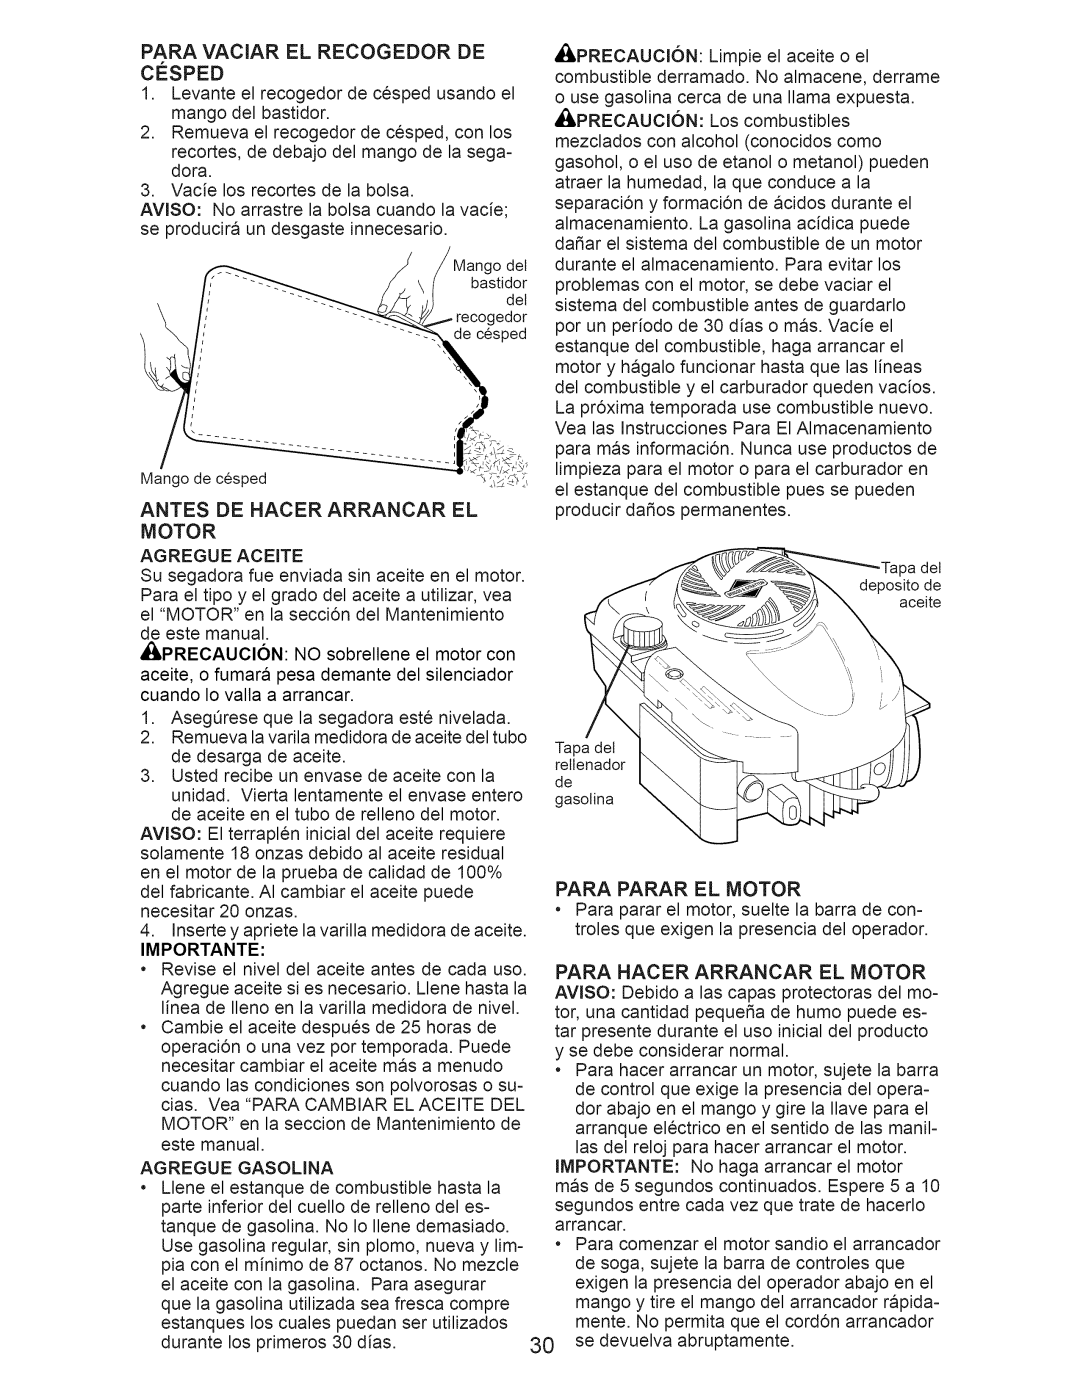 Craftsman 917.376536 manual Antes De Hacer Arrancar El Motor, Para Parar El Motor, Importante 